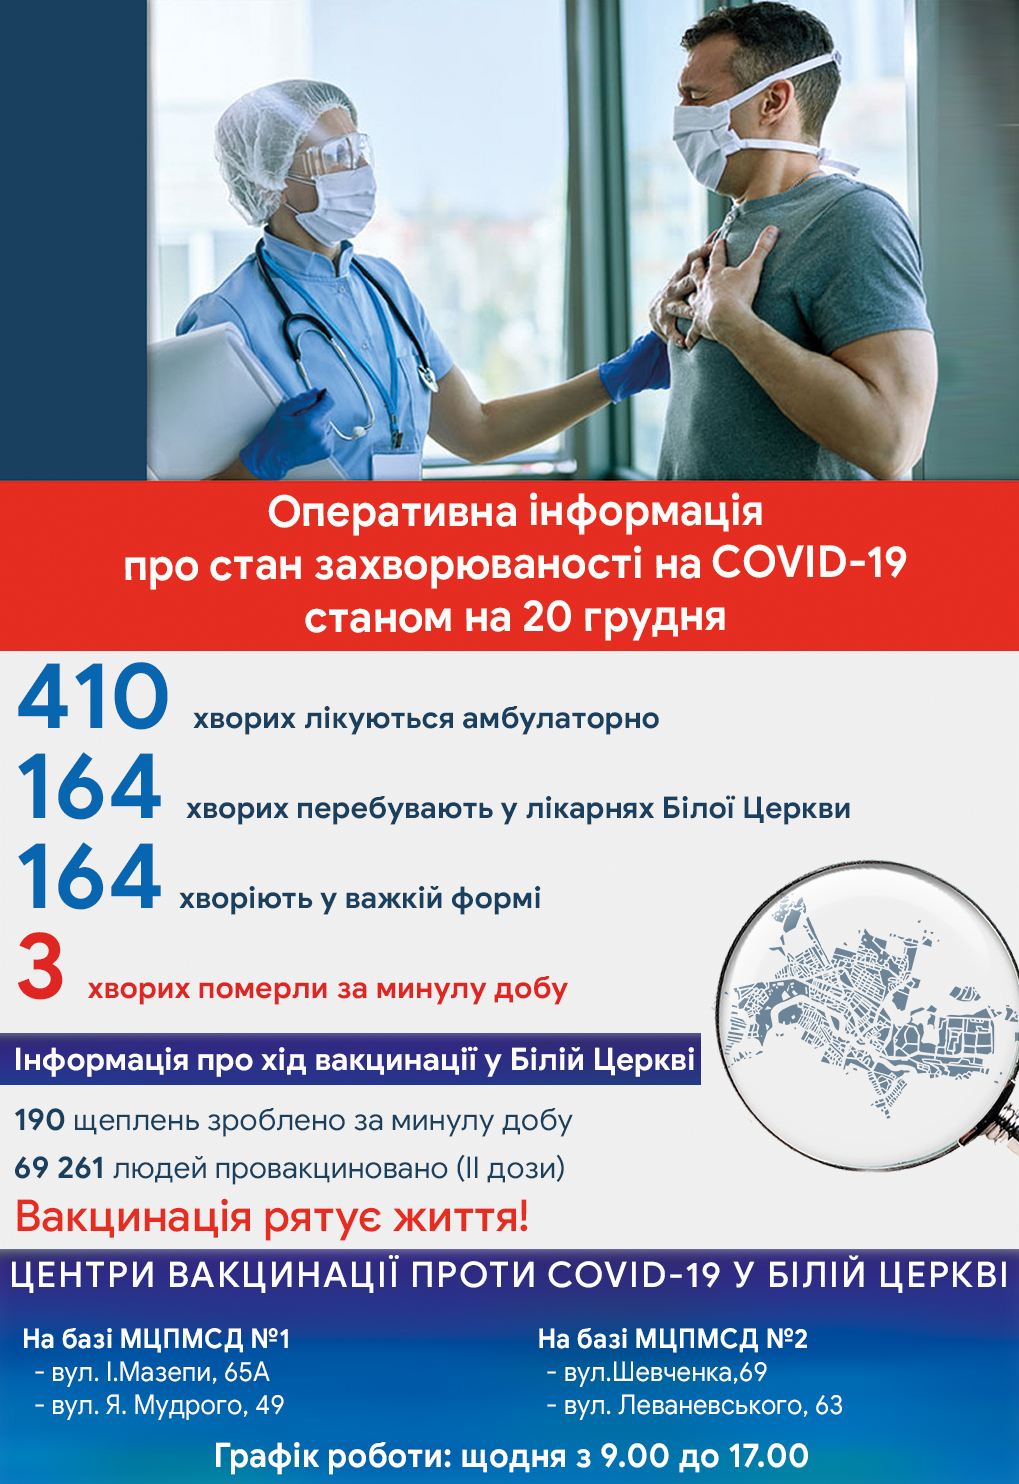 Оперативна інформація про стан захворюваності на COVID-19 станом на 20 грудня